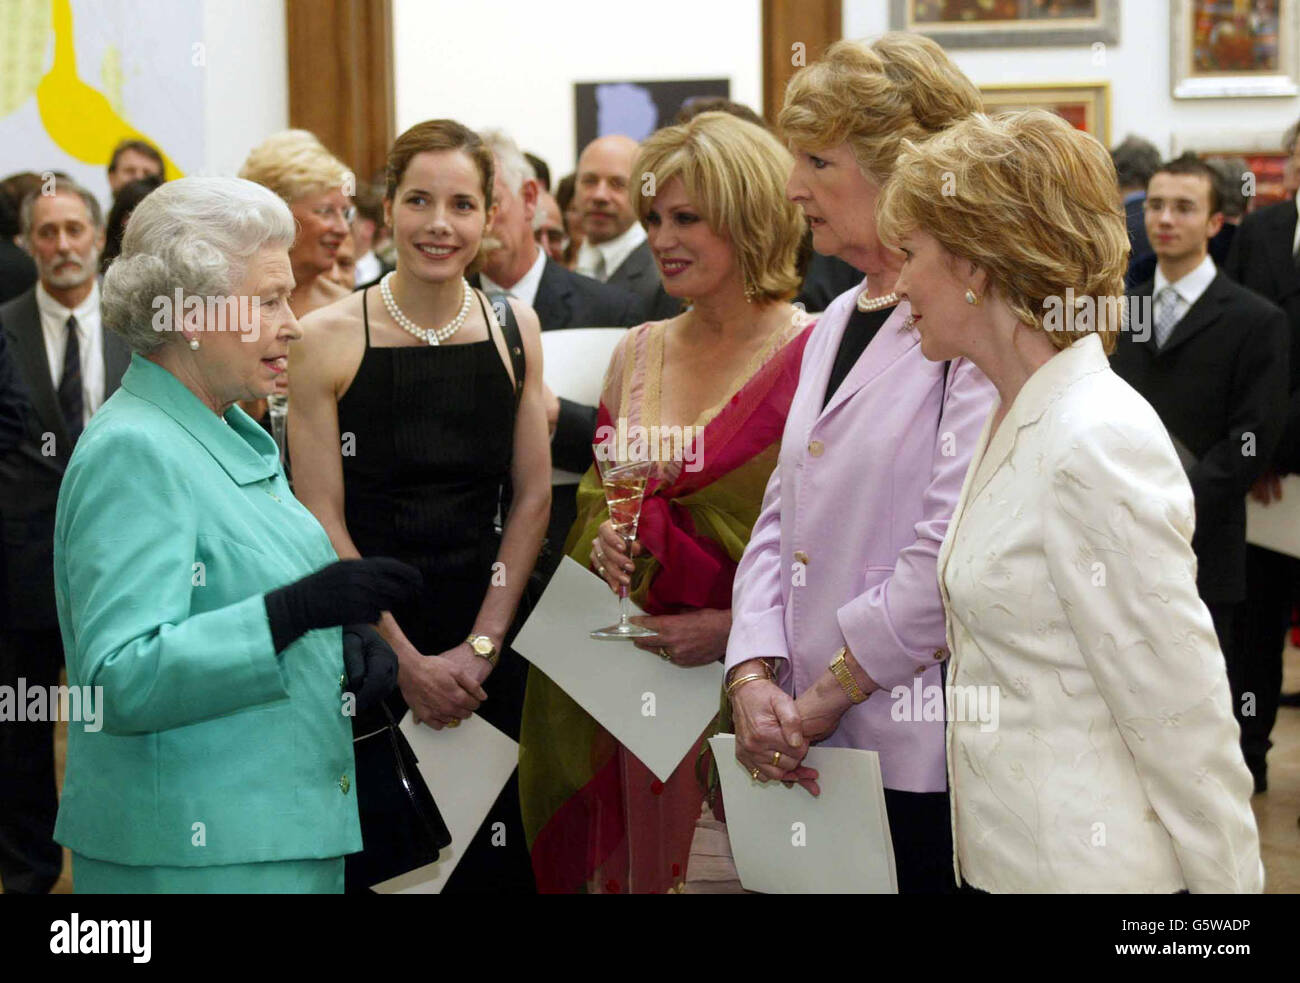 Königin Elizabeth II. Begrüßt Darcey Bussell, Joanna Lumley, Penelope Keith und Patricia Hodge anlässlich des Royal Acamdemy Arts Reception anlässlich ihres Goldenen Jubiläums. Stockfoto